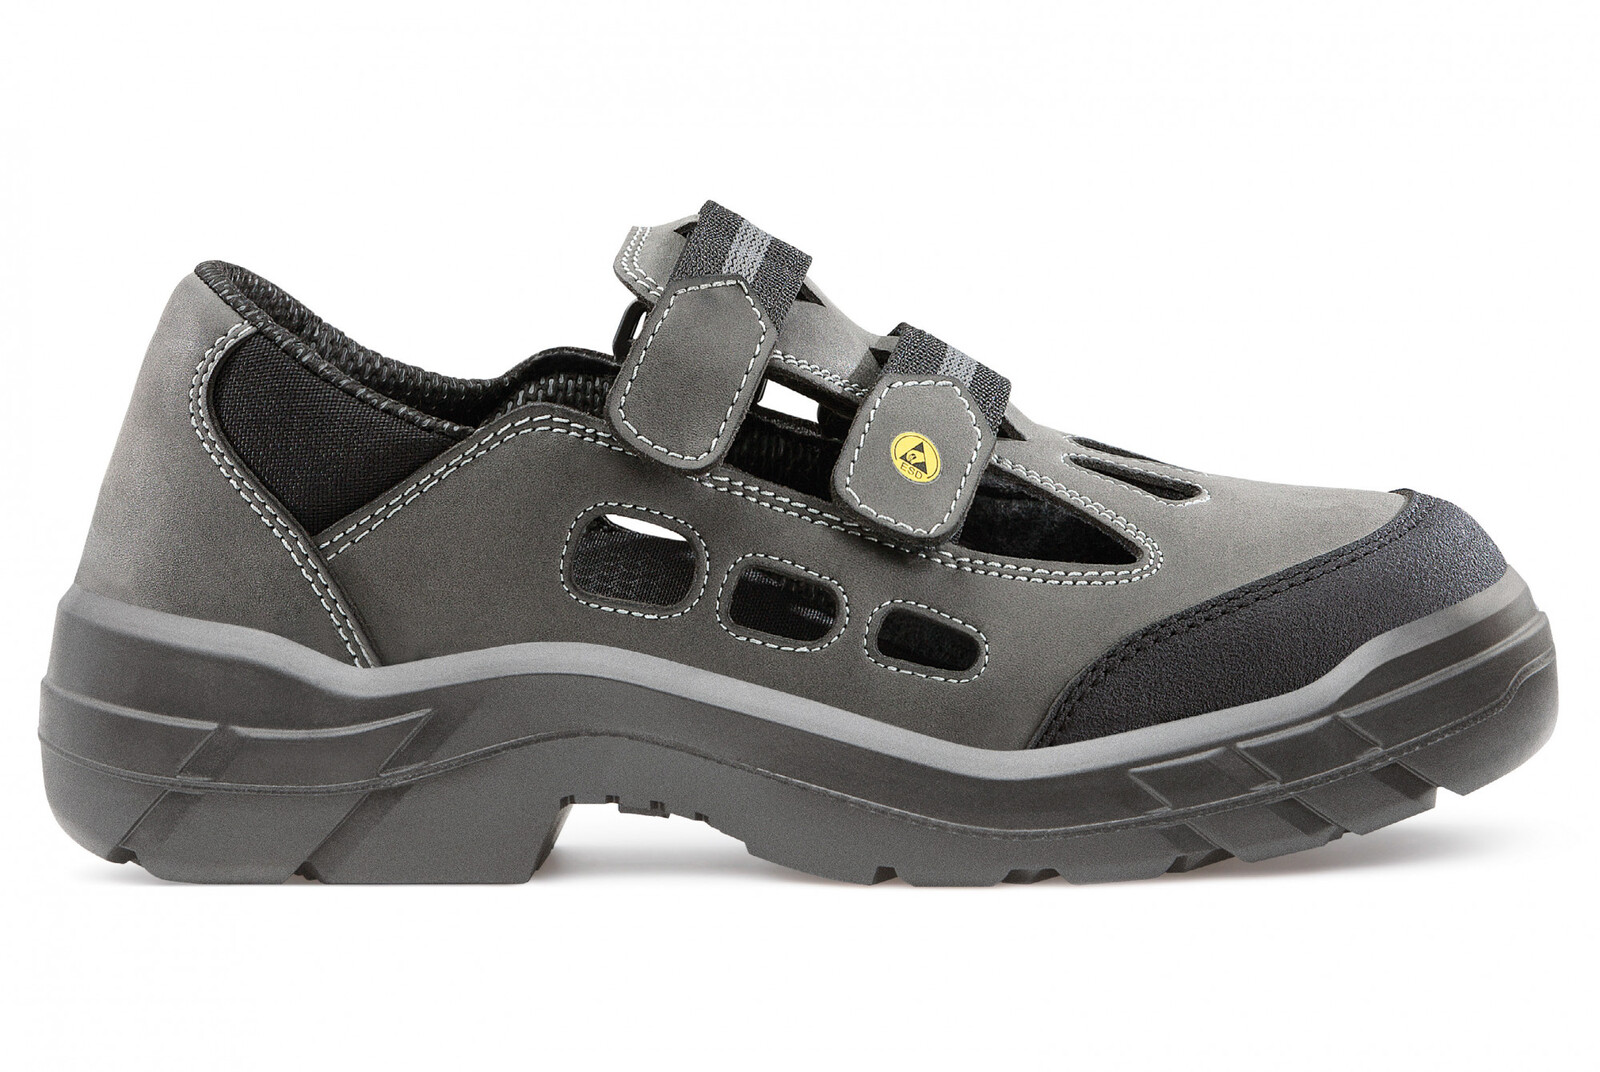 Bezpečnostné sandále  Artra Arjun 903 2560 S1 SRC ESD - veľkosť: 41, farba: sivá/čierna